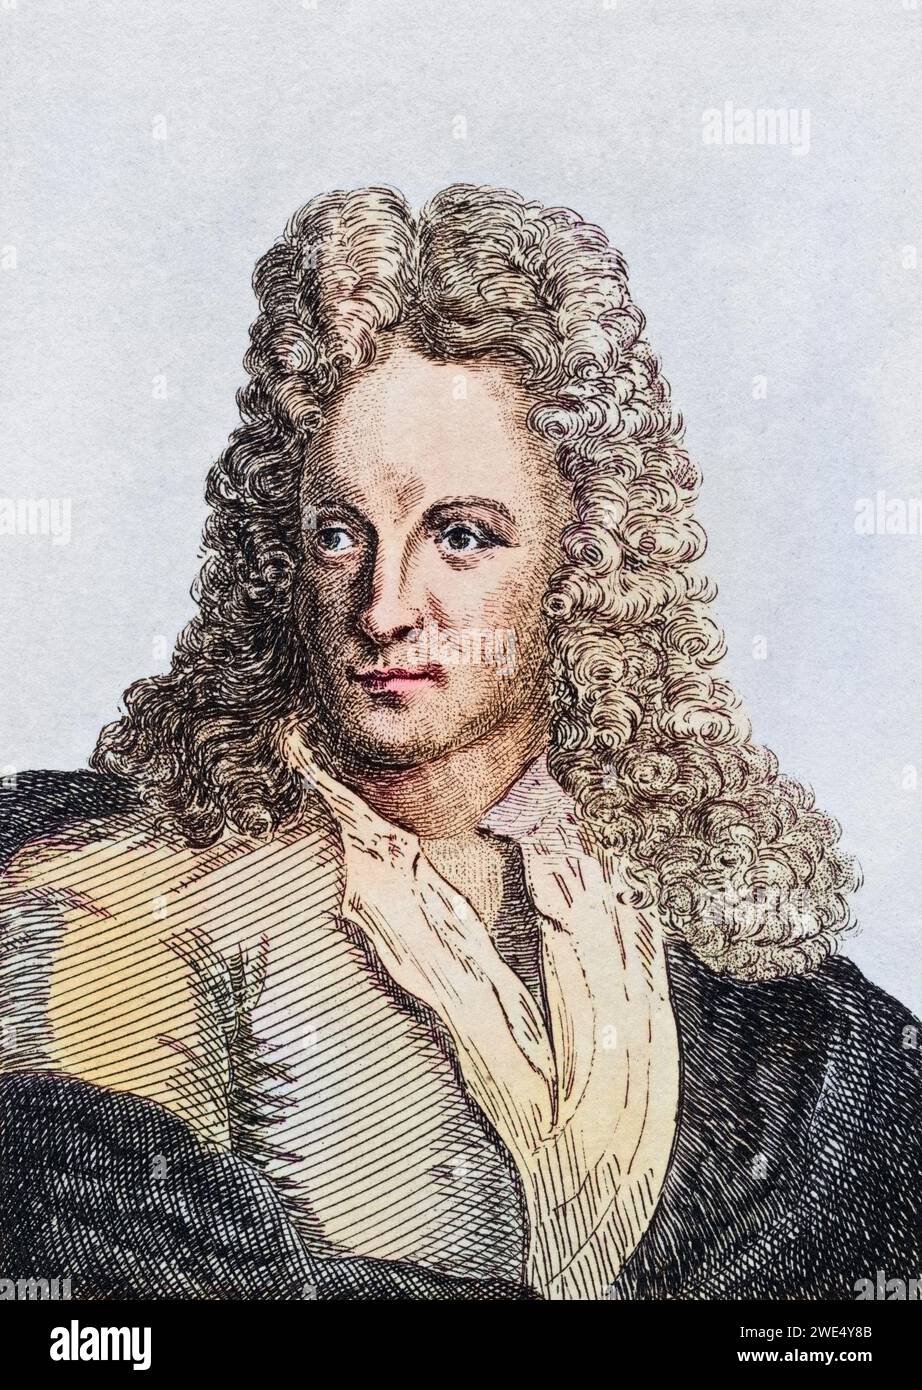 Jan van Huysum 1682-1749 holländischer Künstler, Historisch, digital restaurierte Reproduktion von einer Vorlage aus dem 19. Jahrhundert, Record date not stated Stock Photo